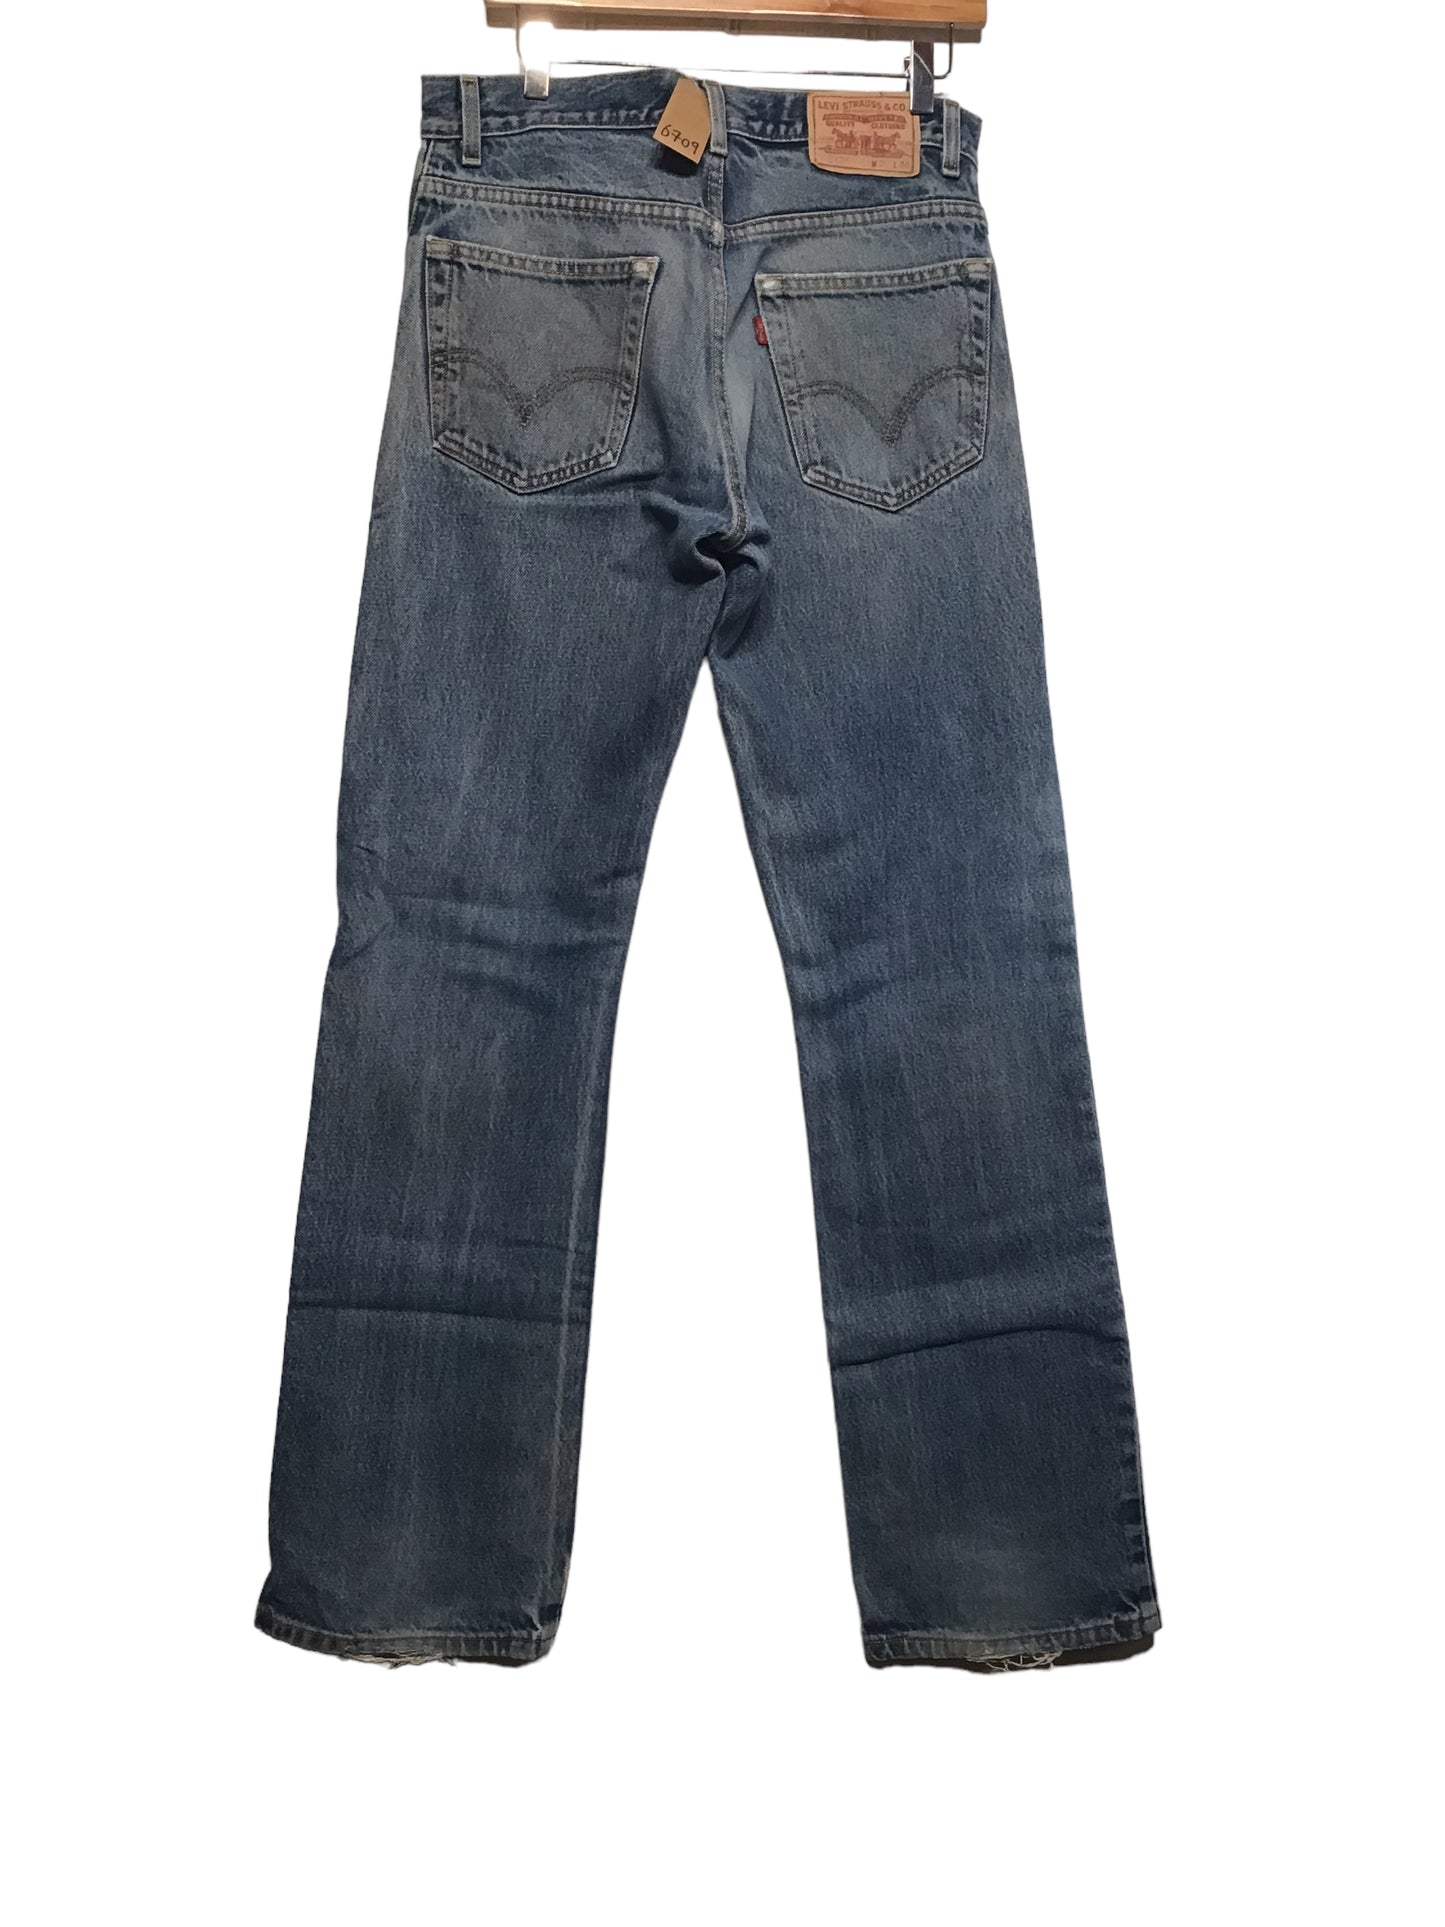 Levi 517 Jeans (32x34)